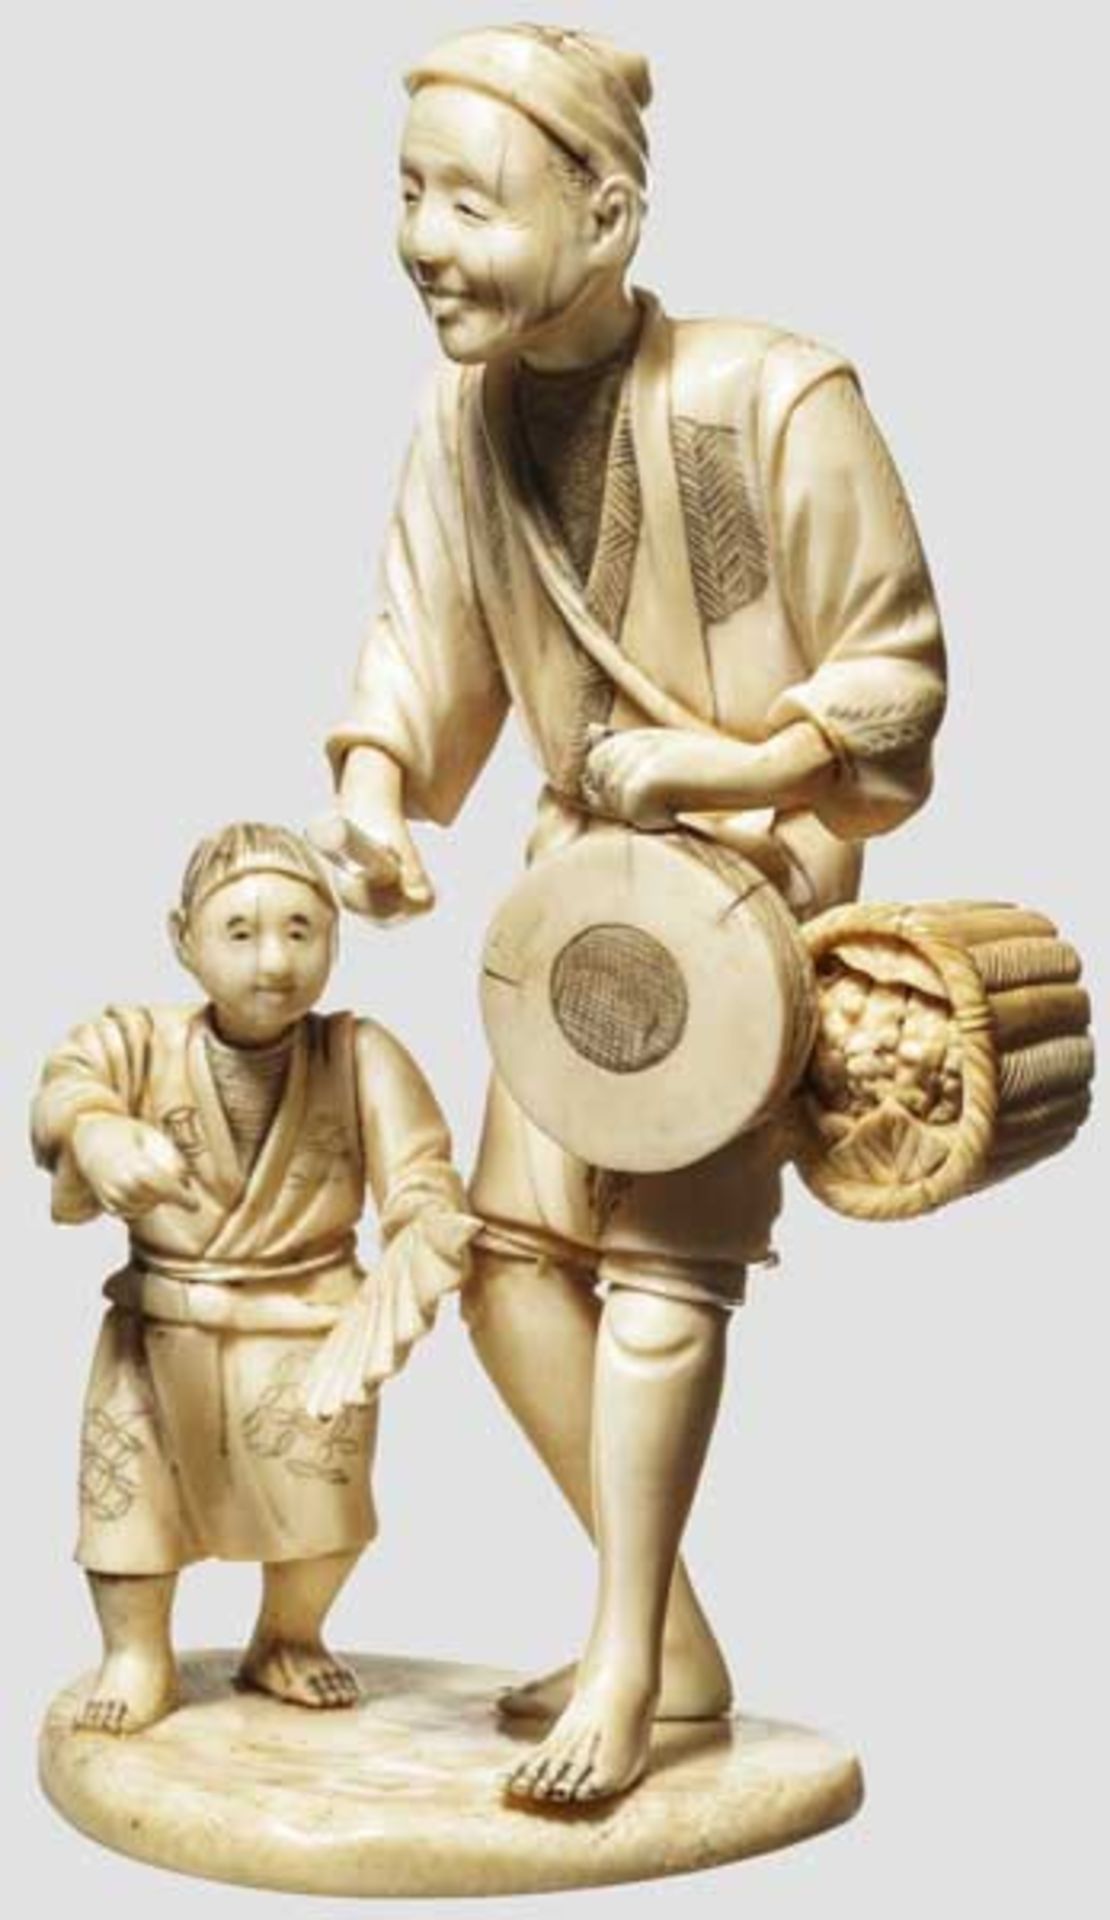 Okimono eines Trommlers, Meiji-Periode Darstellung eines Trommlers begleitet von einem tanzenden